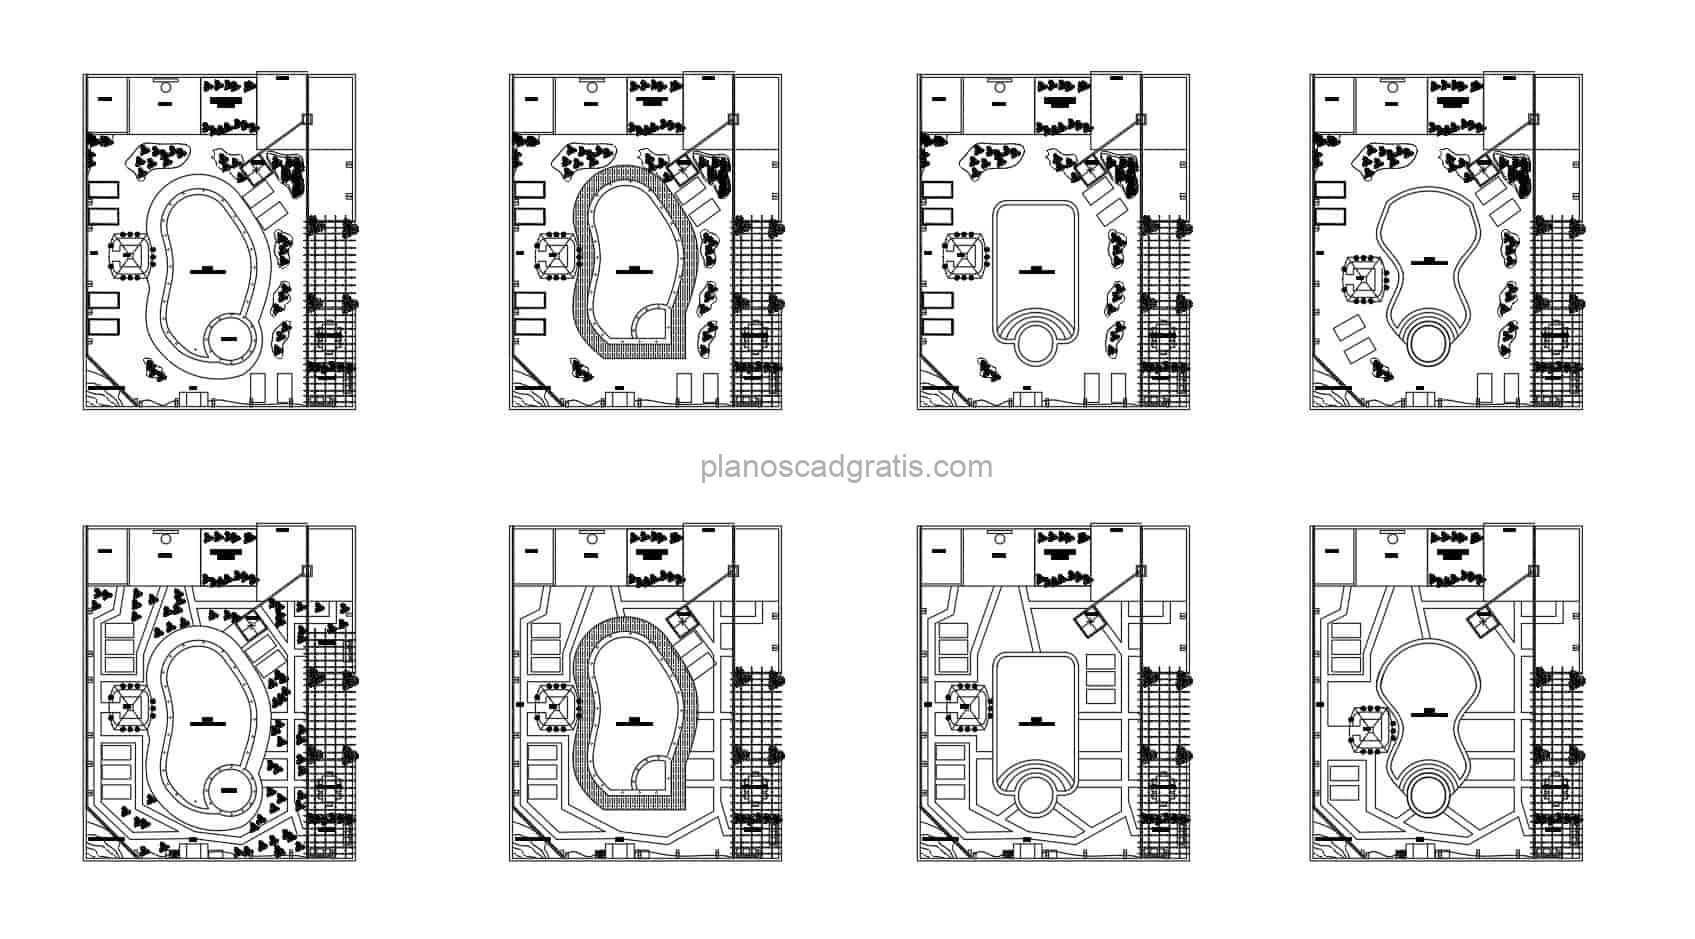 Piscinas Diferentes Formas Bloques de AutoCAD 3105212 - Planos CAD Gratis